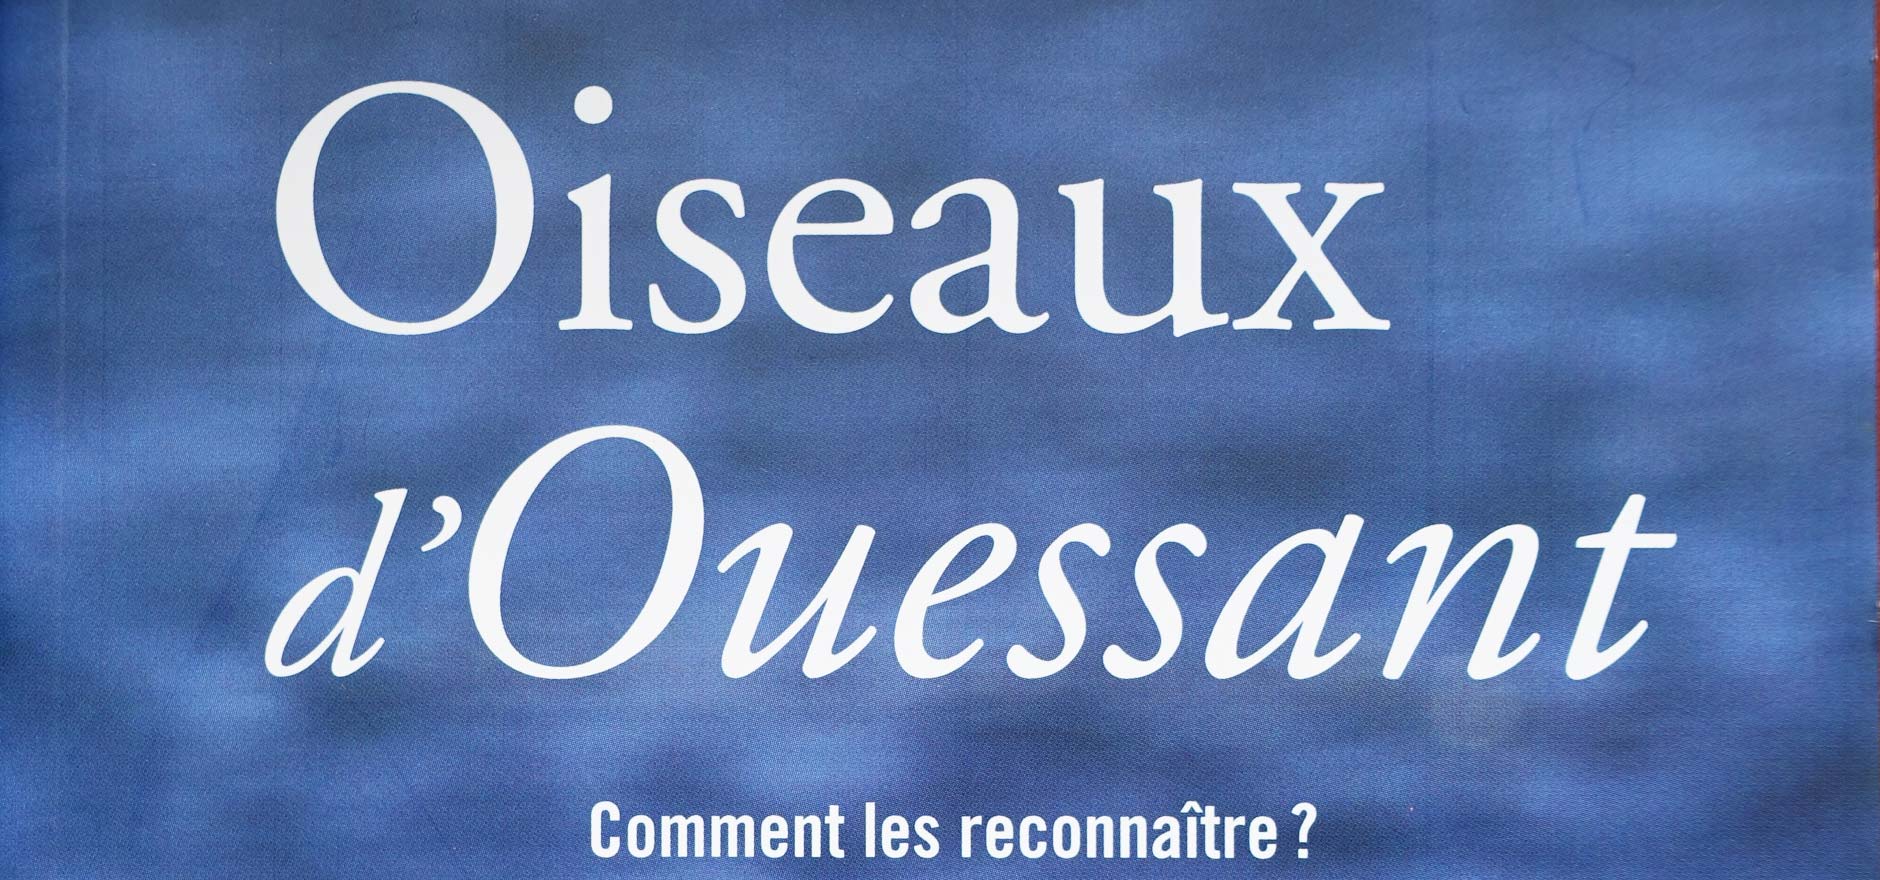 Publications in the book “Oiseaux d’Ouessant”